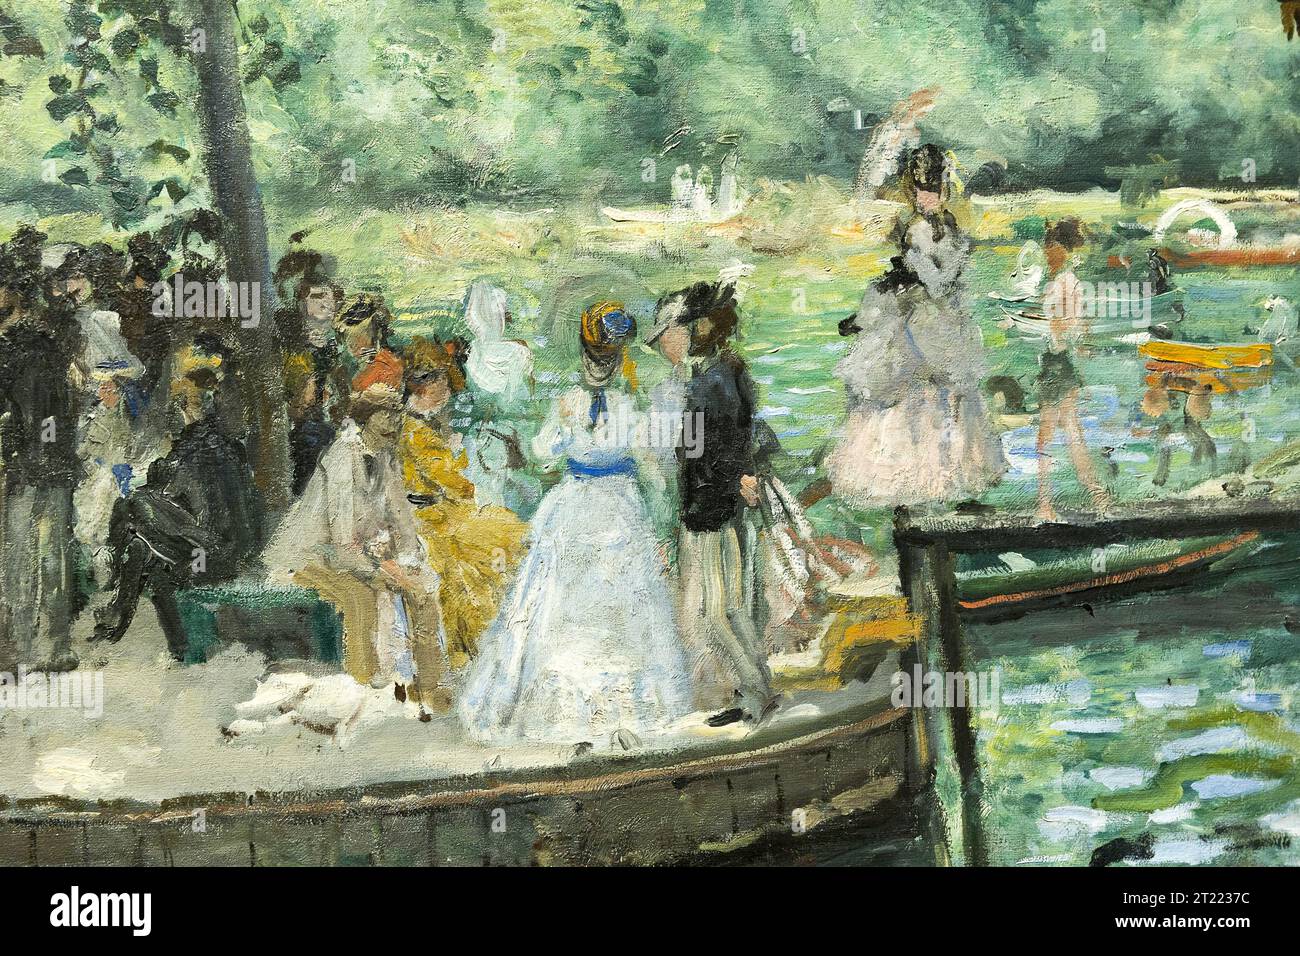 Detalle de la pintura del artista francés Renoir Foto de stock